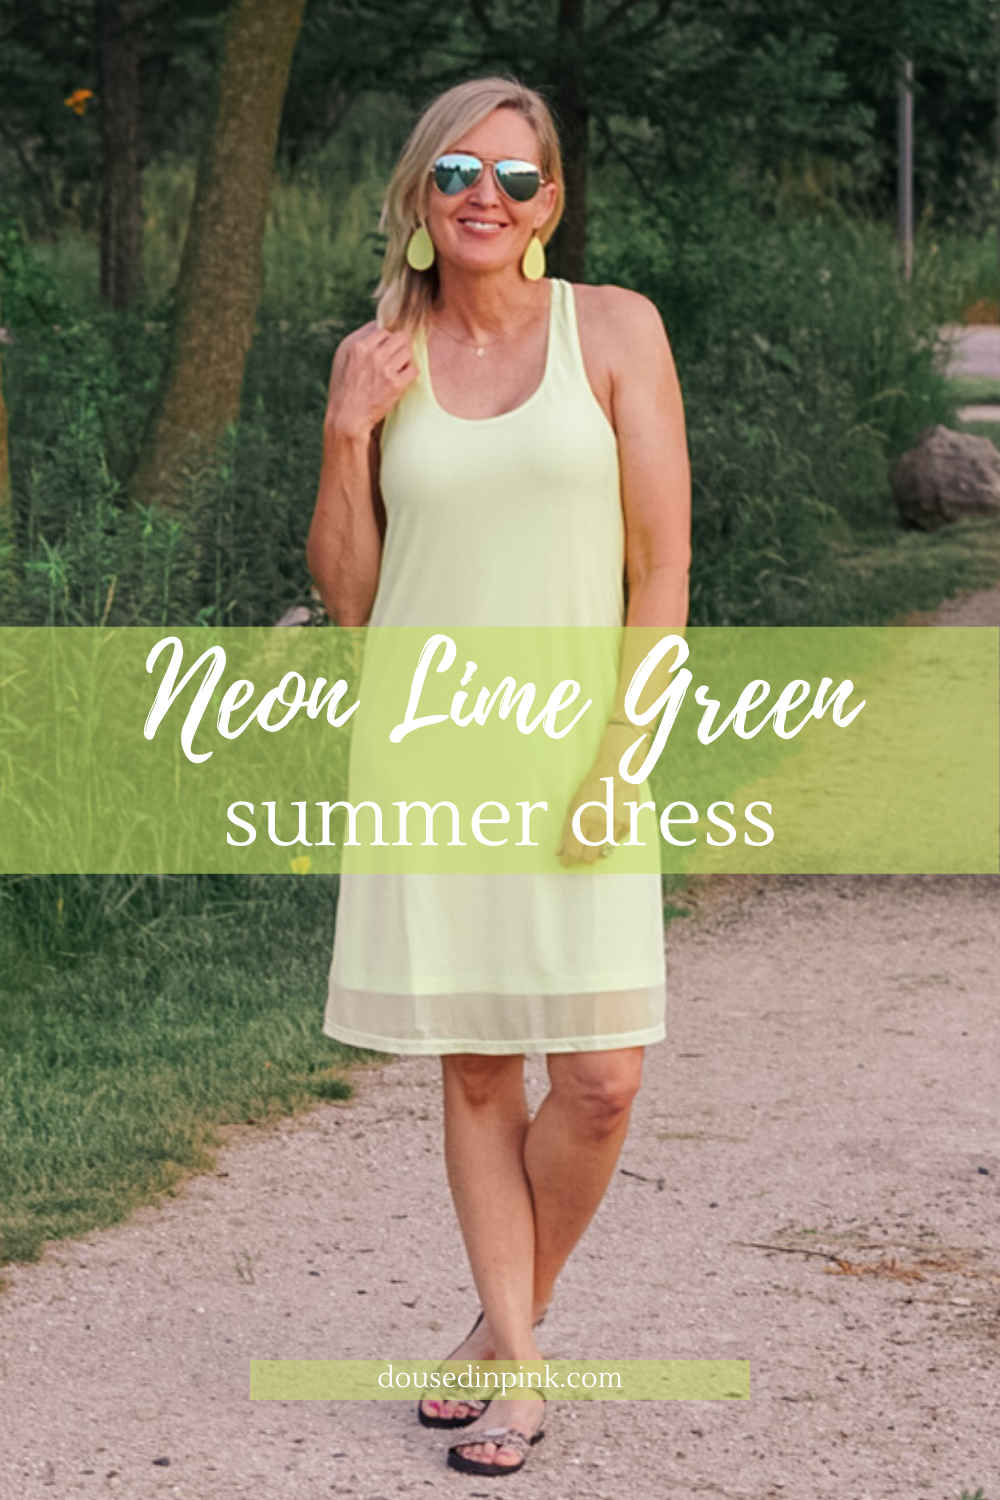 neon lime green summer dress